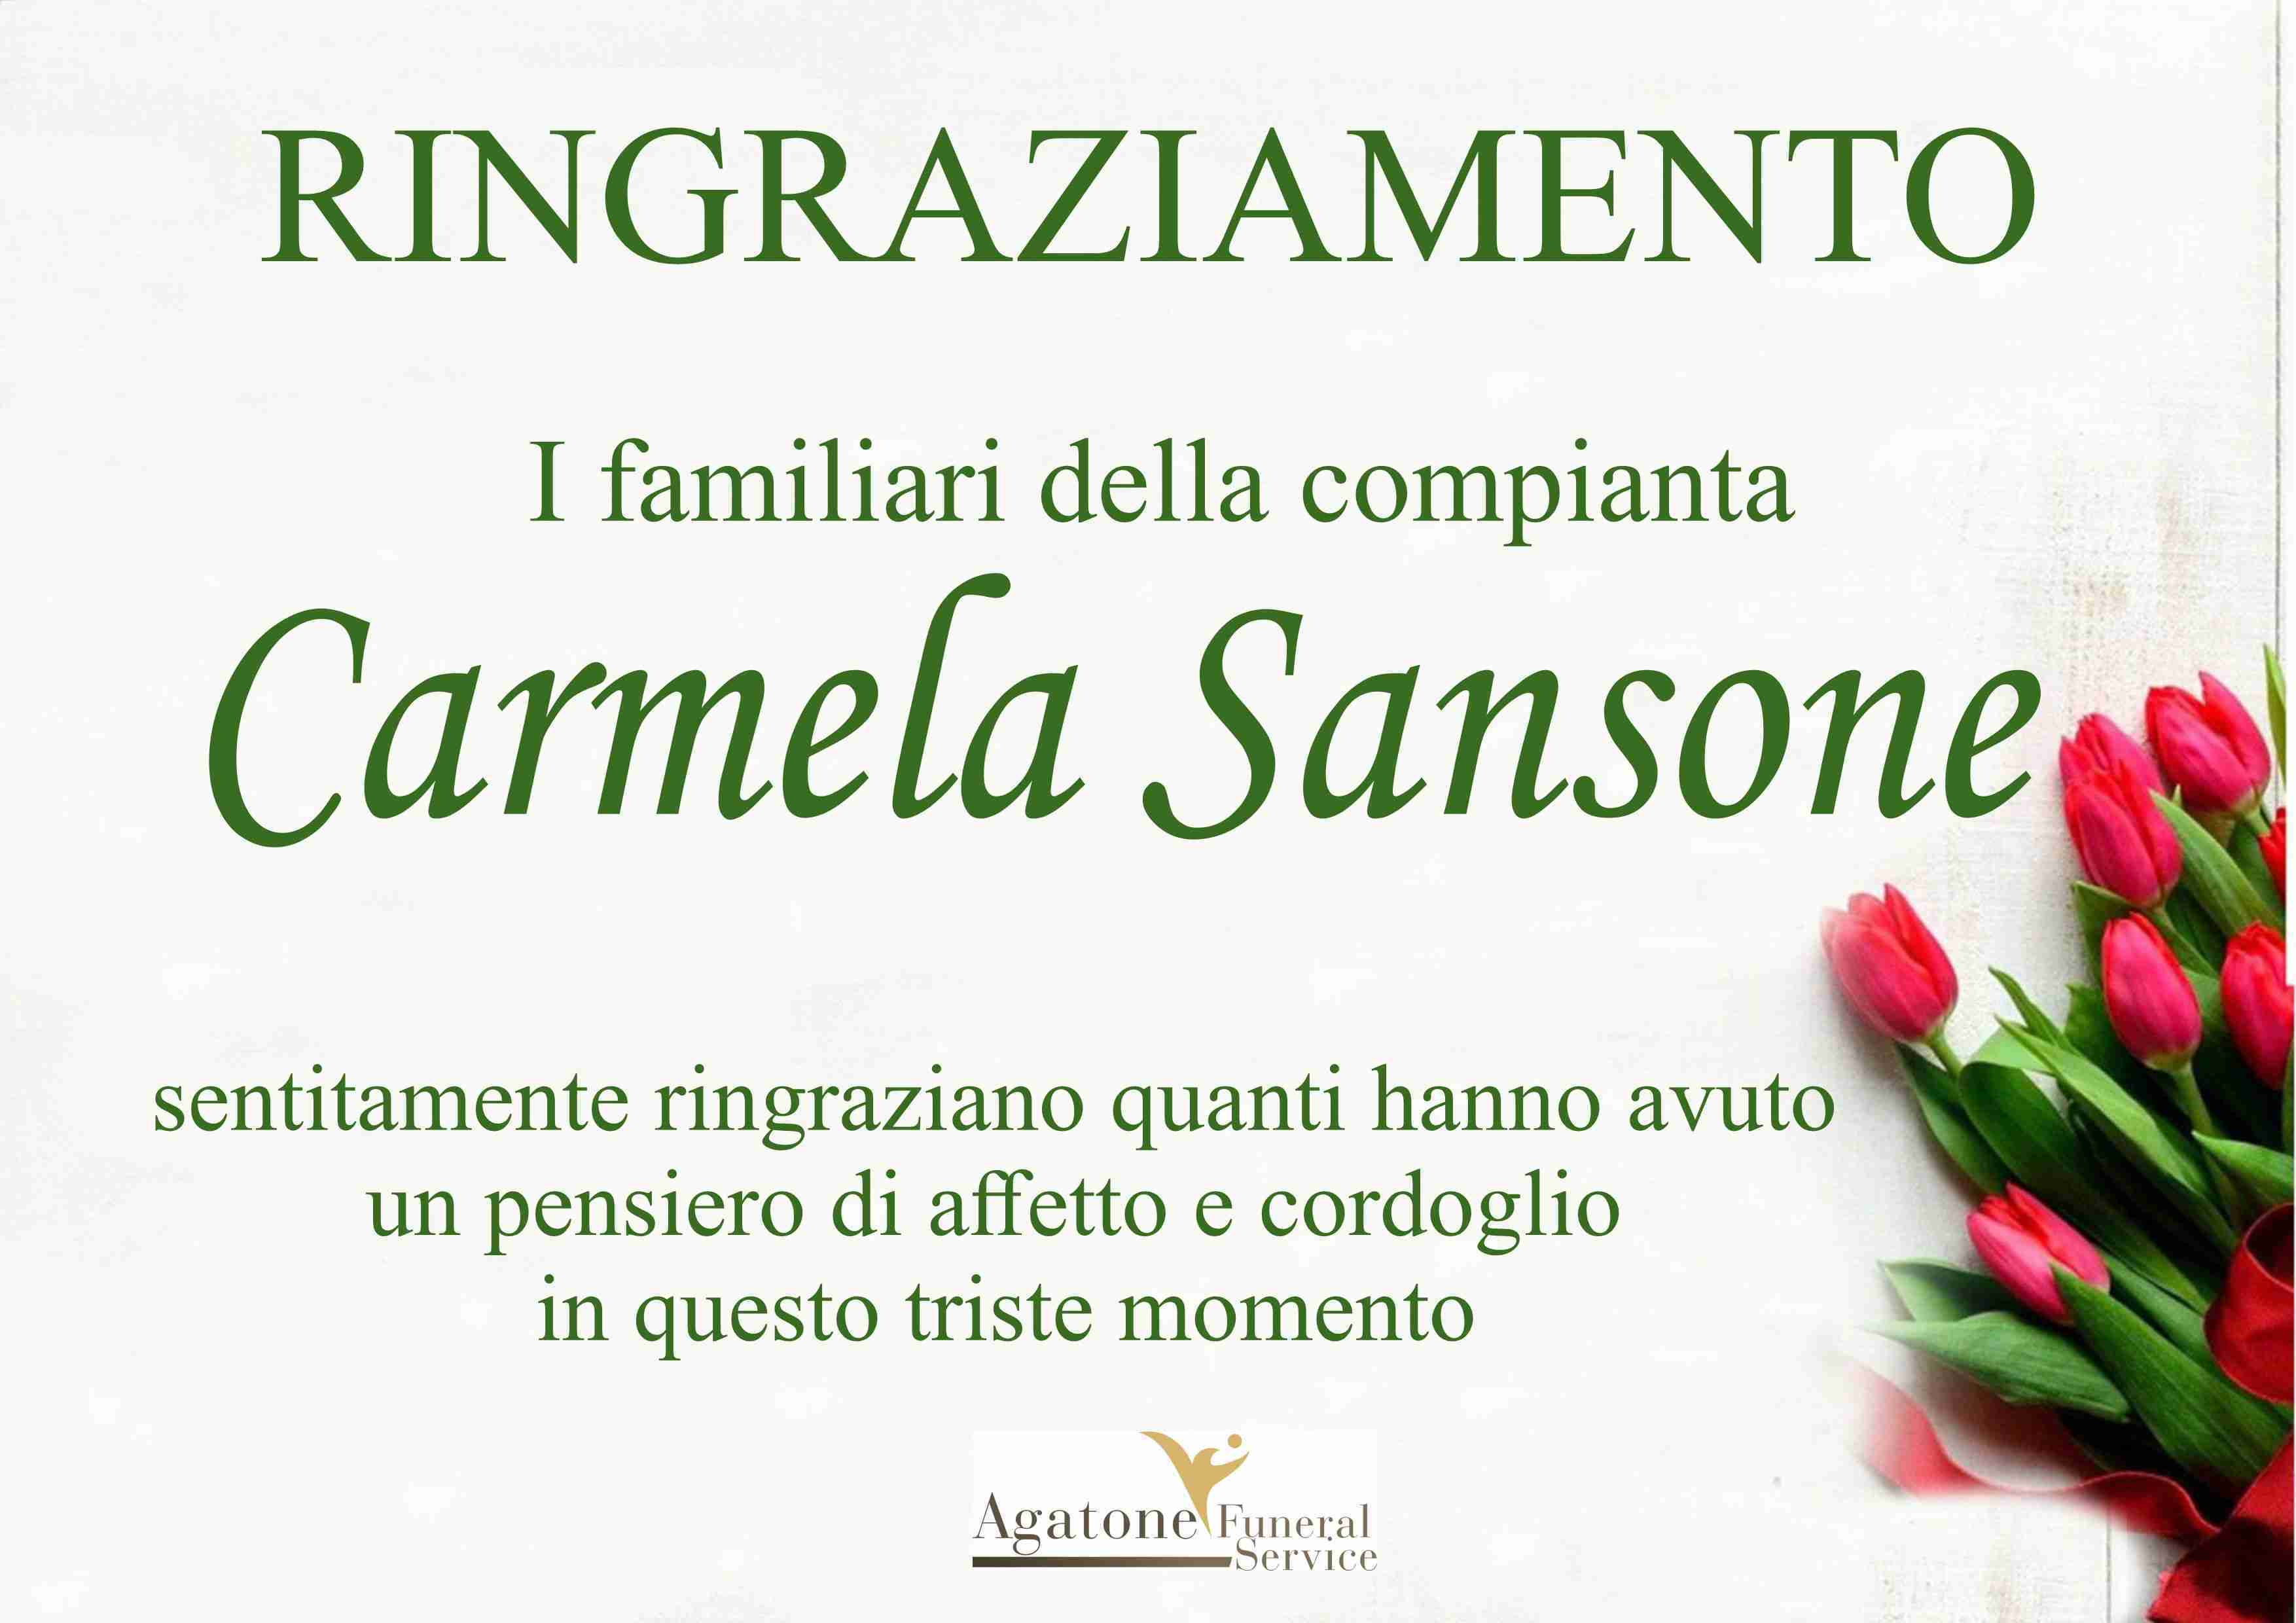 Carmela Sansone